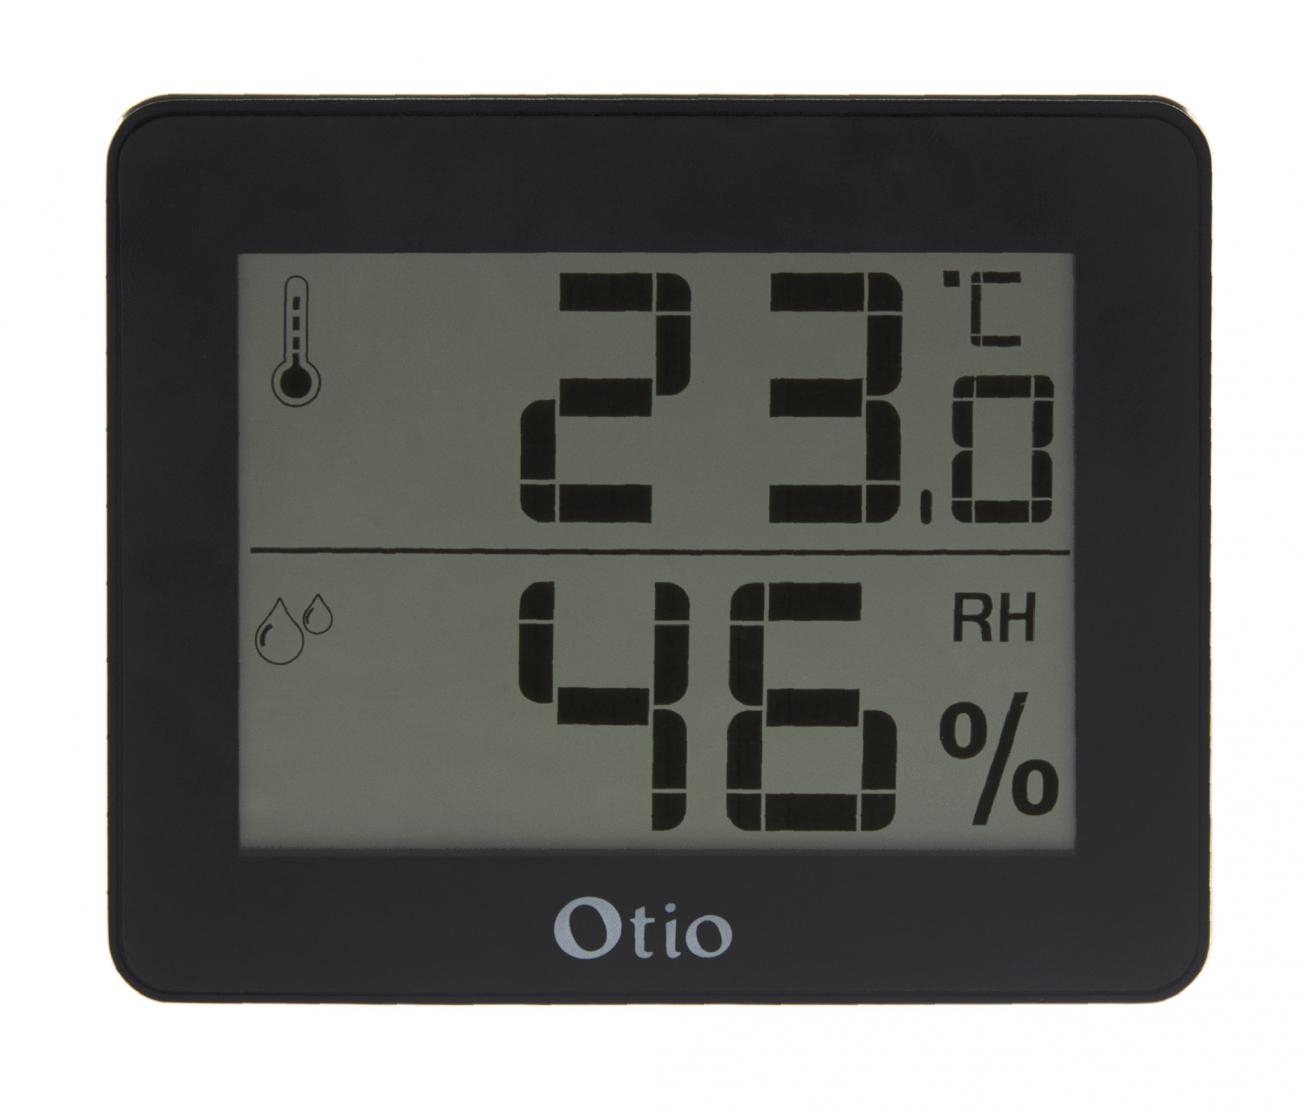 OTIO Thermomètre / hygromètre intérieur OTIO noir